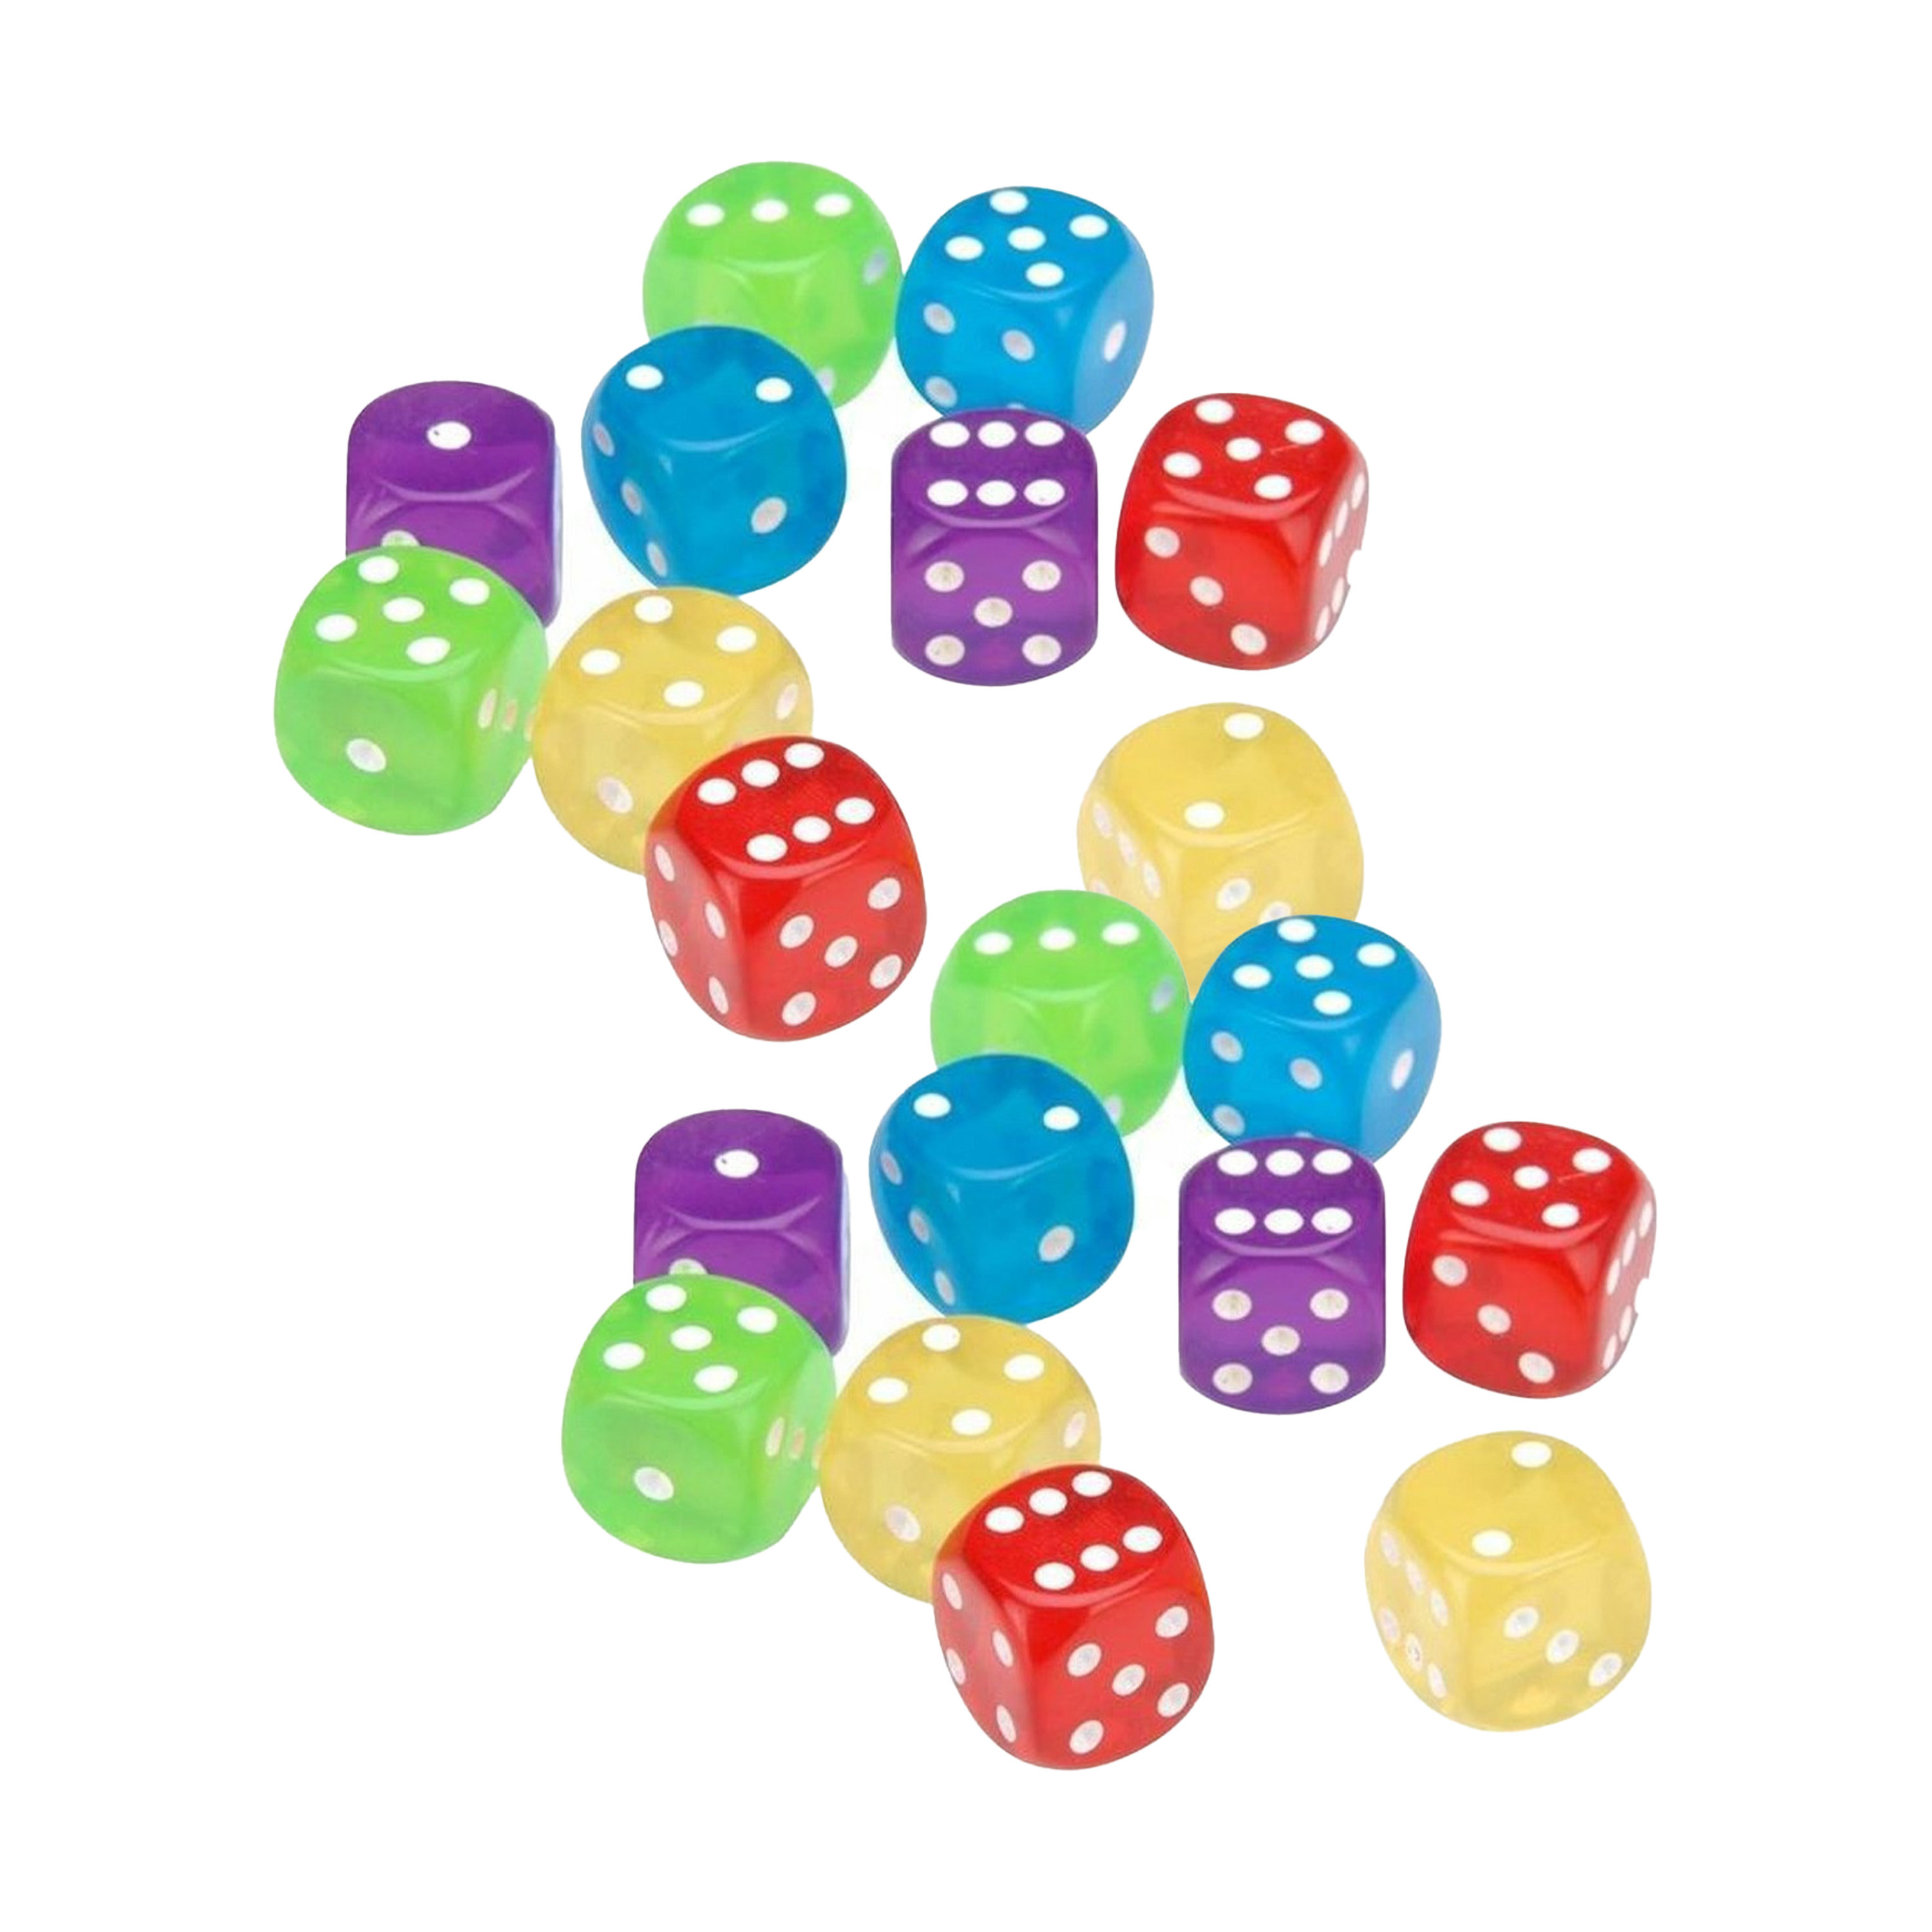 TopTen Dobbelstenen 20x kleurenmix kunststof bordspellen dobbel spellen